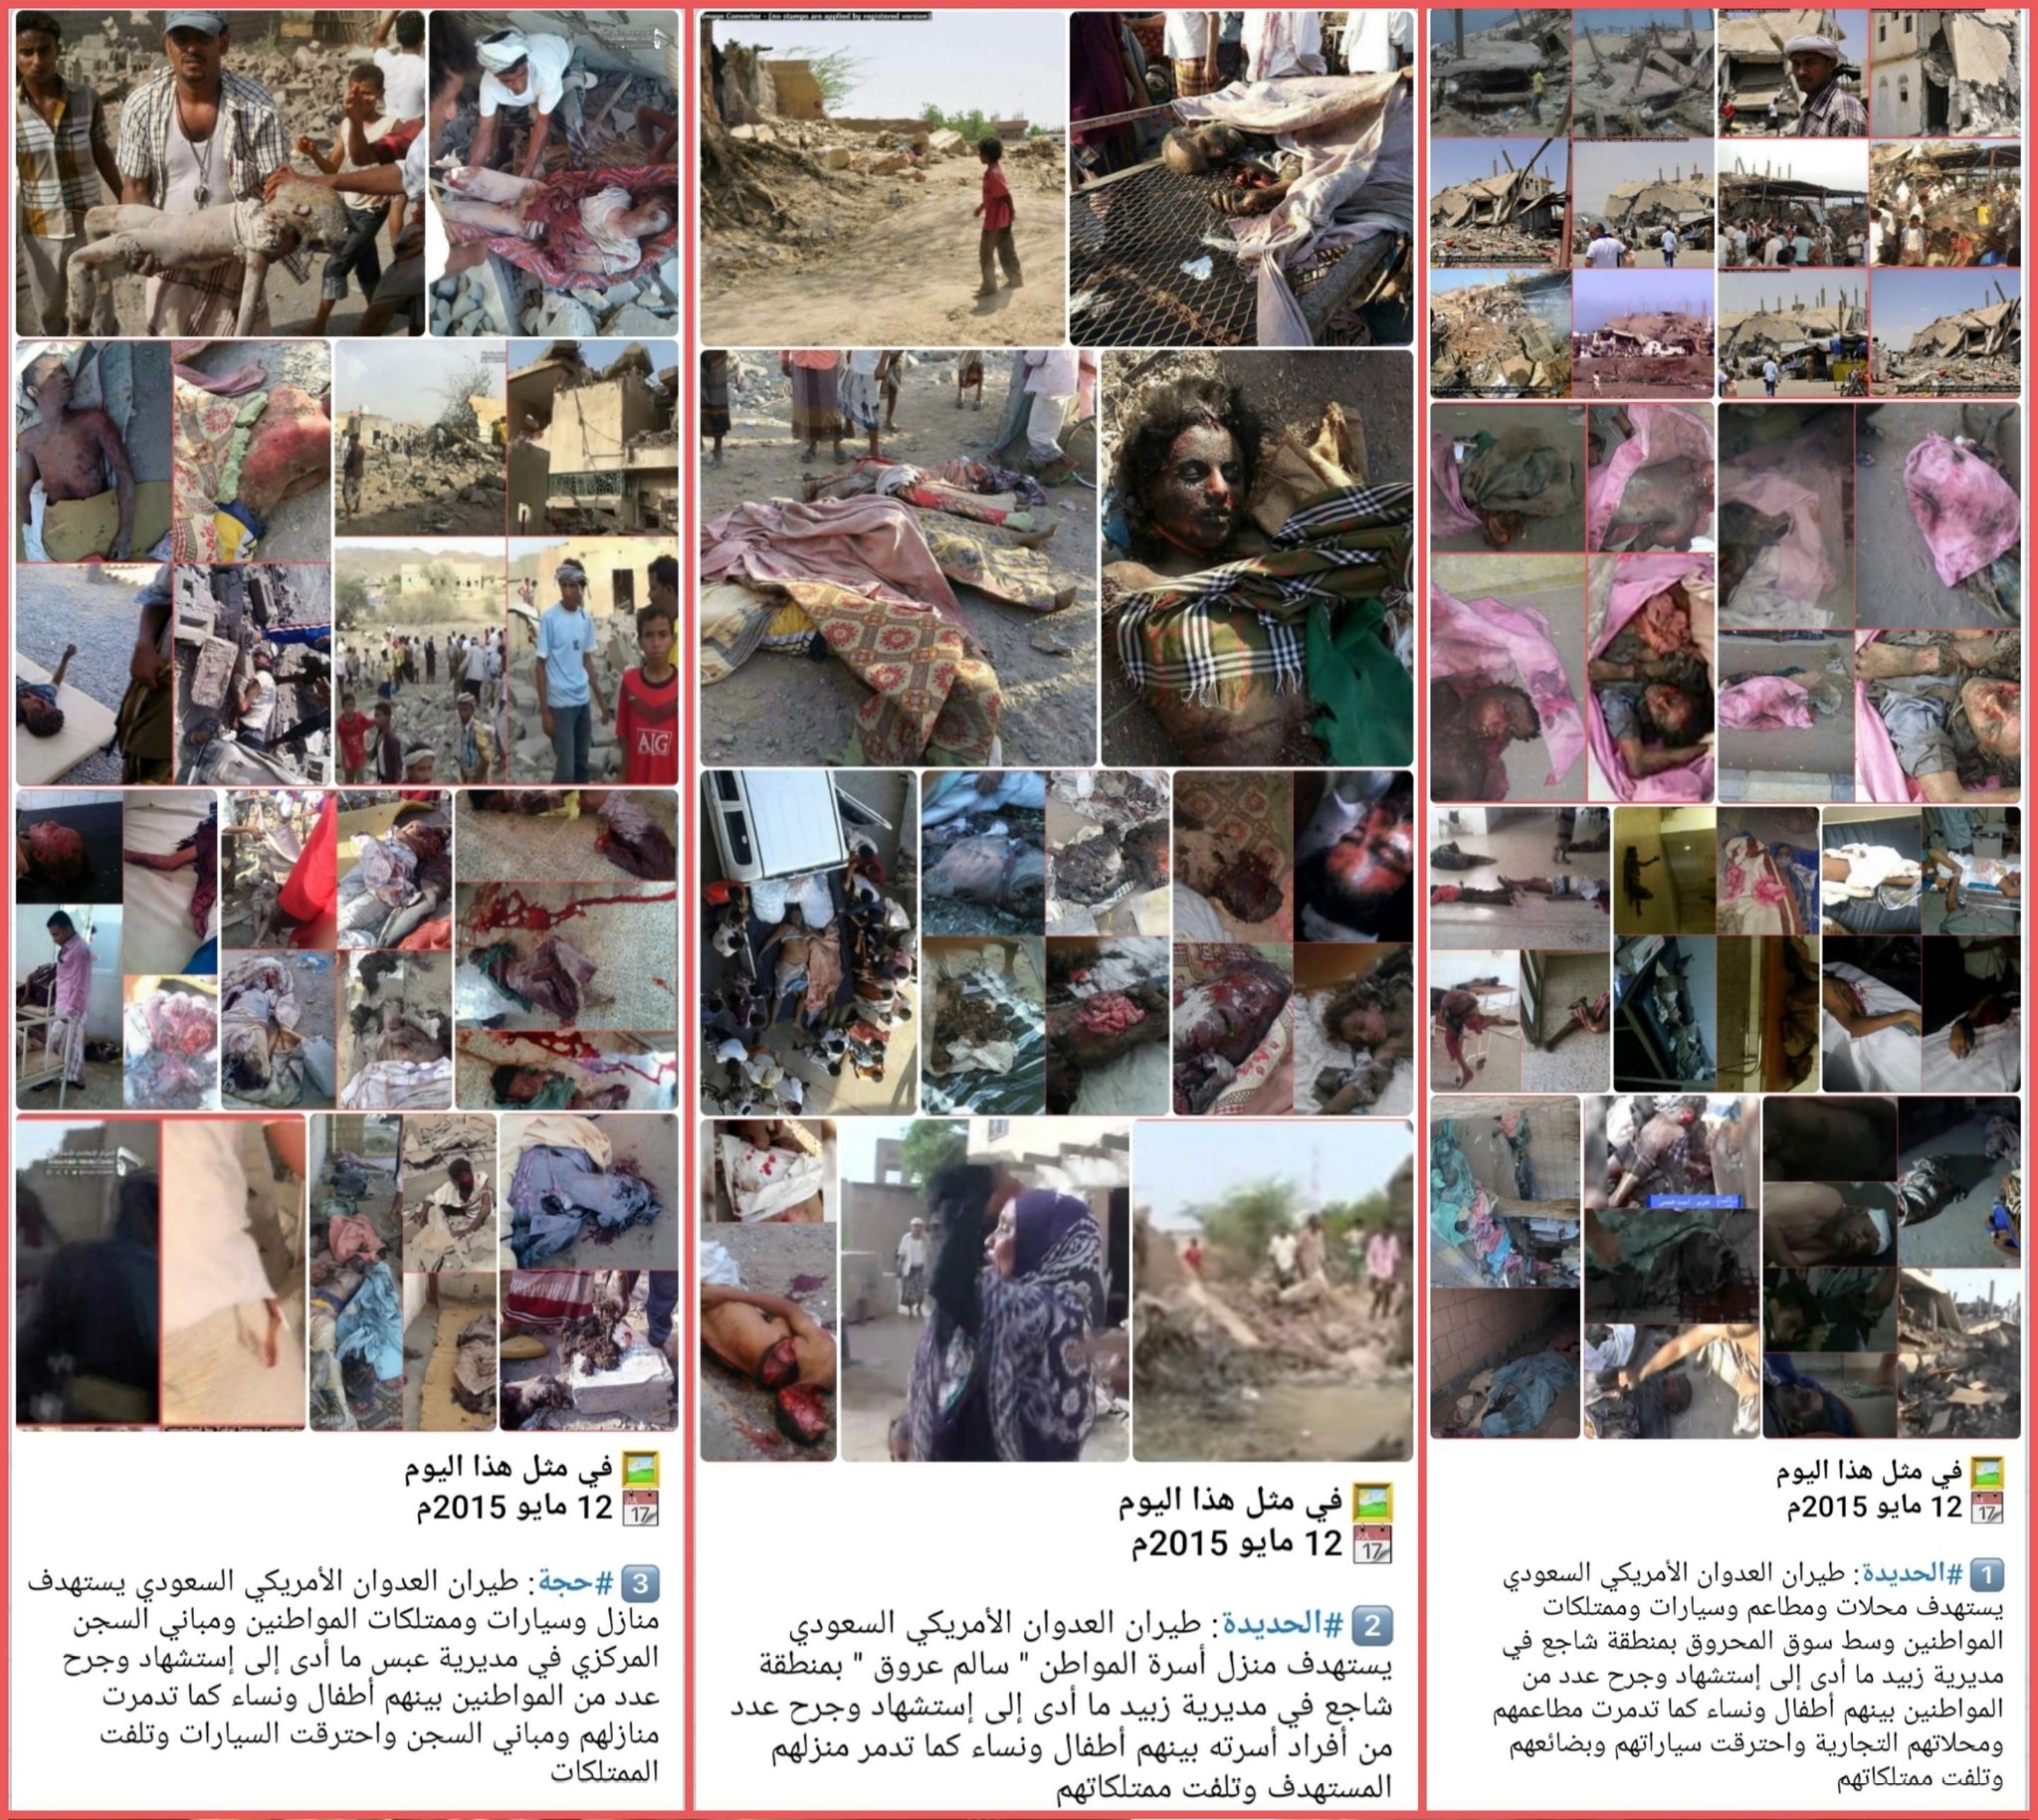 سالروز کشتار بی رحمانه زنان و کودکان یمنی